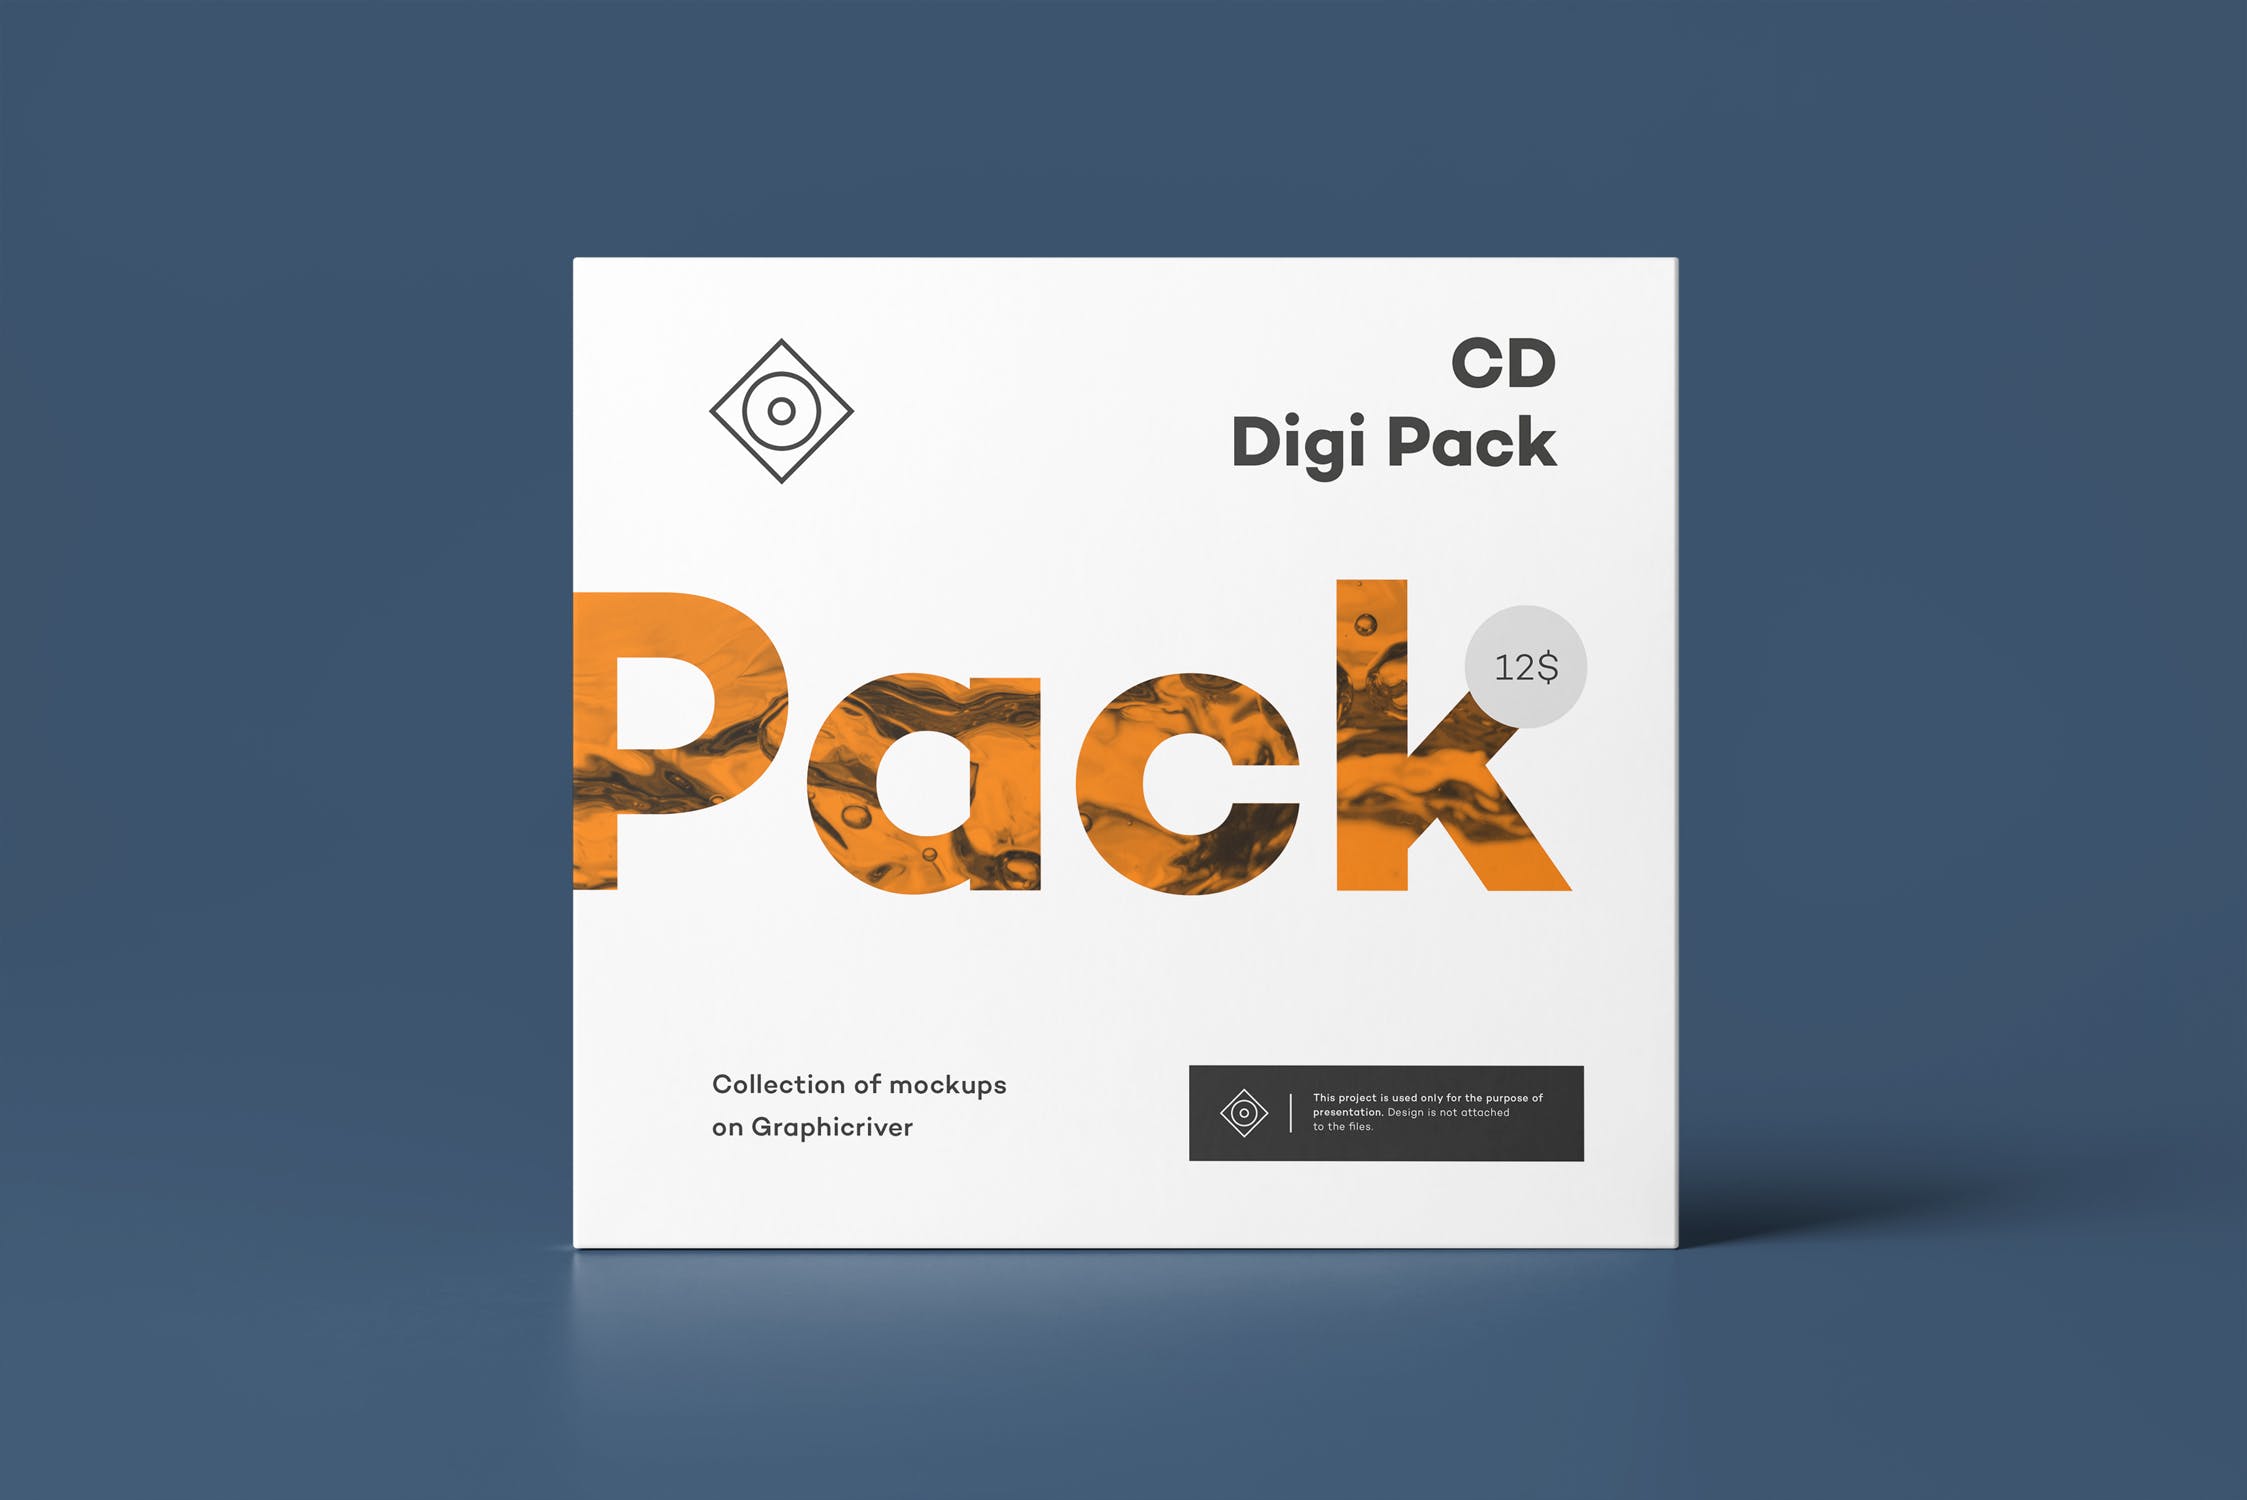 CD光碟封面&包装盒设计图第一素材精选模板v8 CD Digi Pack Mock-up 8插图(12)